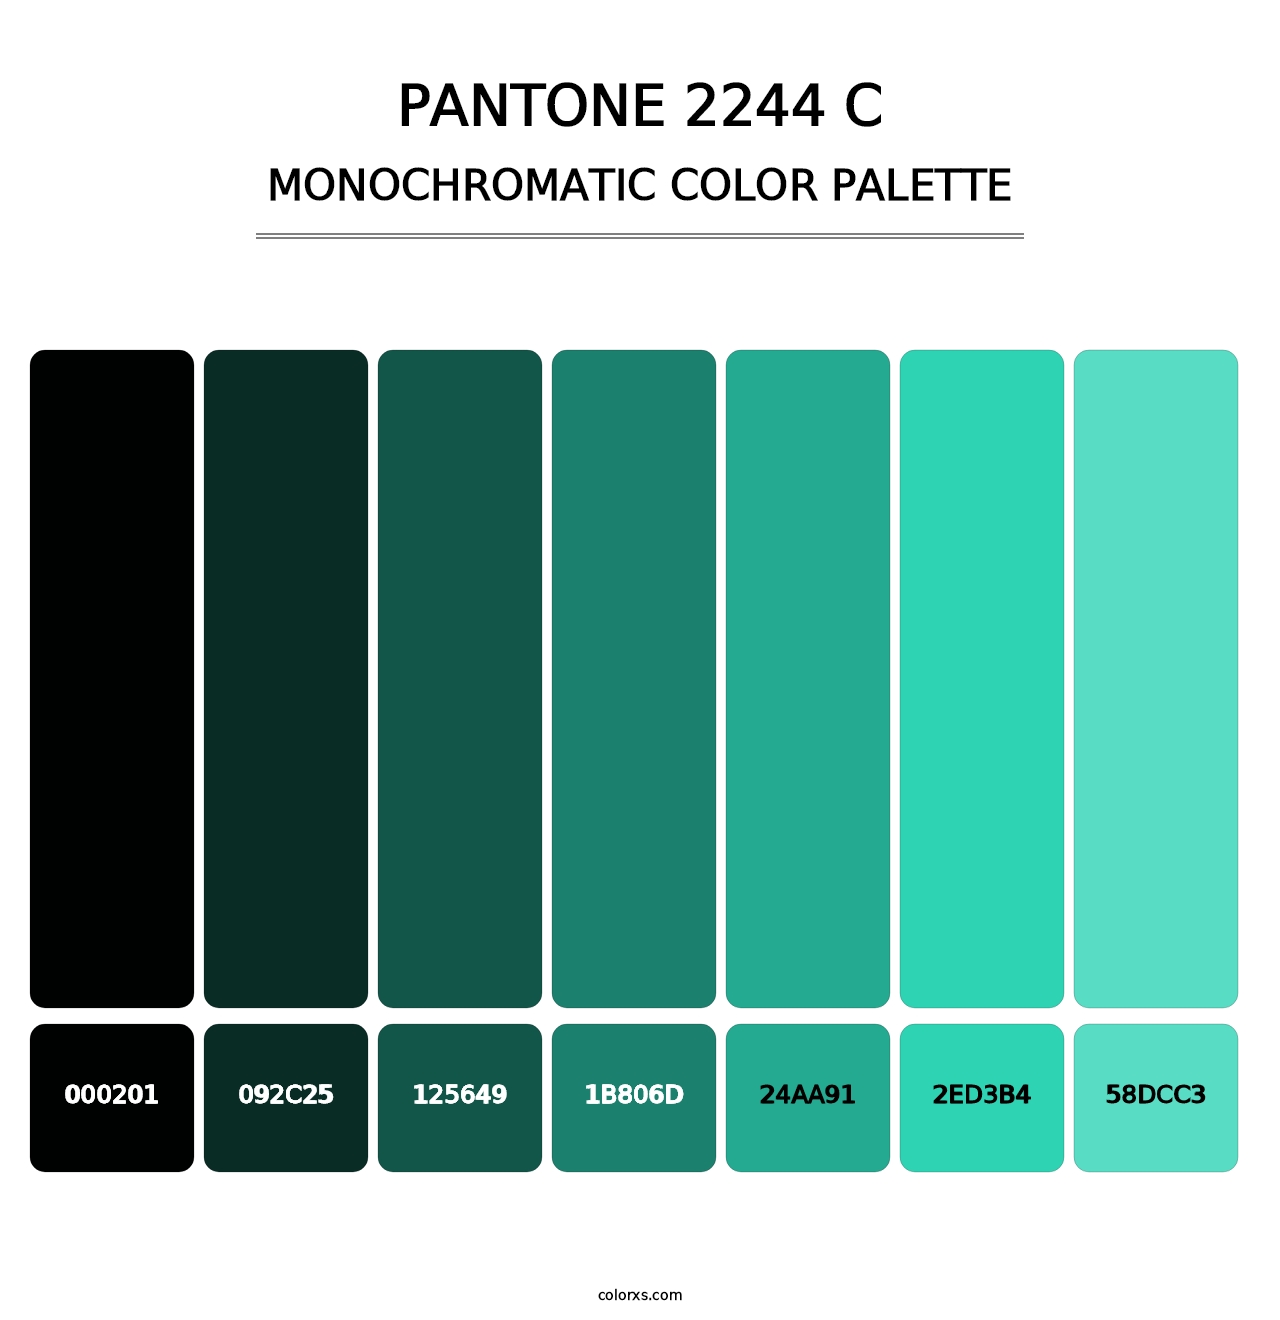 PANTONE 2244 C - Monochromatic Color Palette